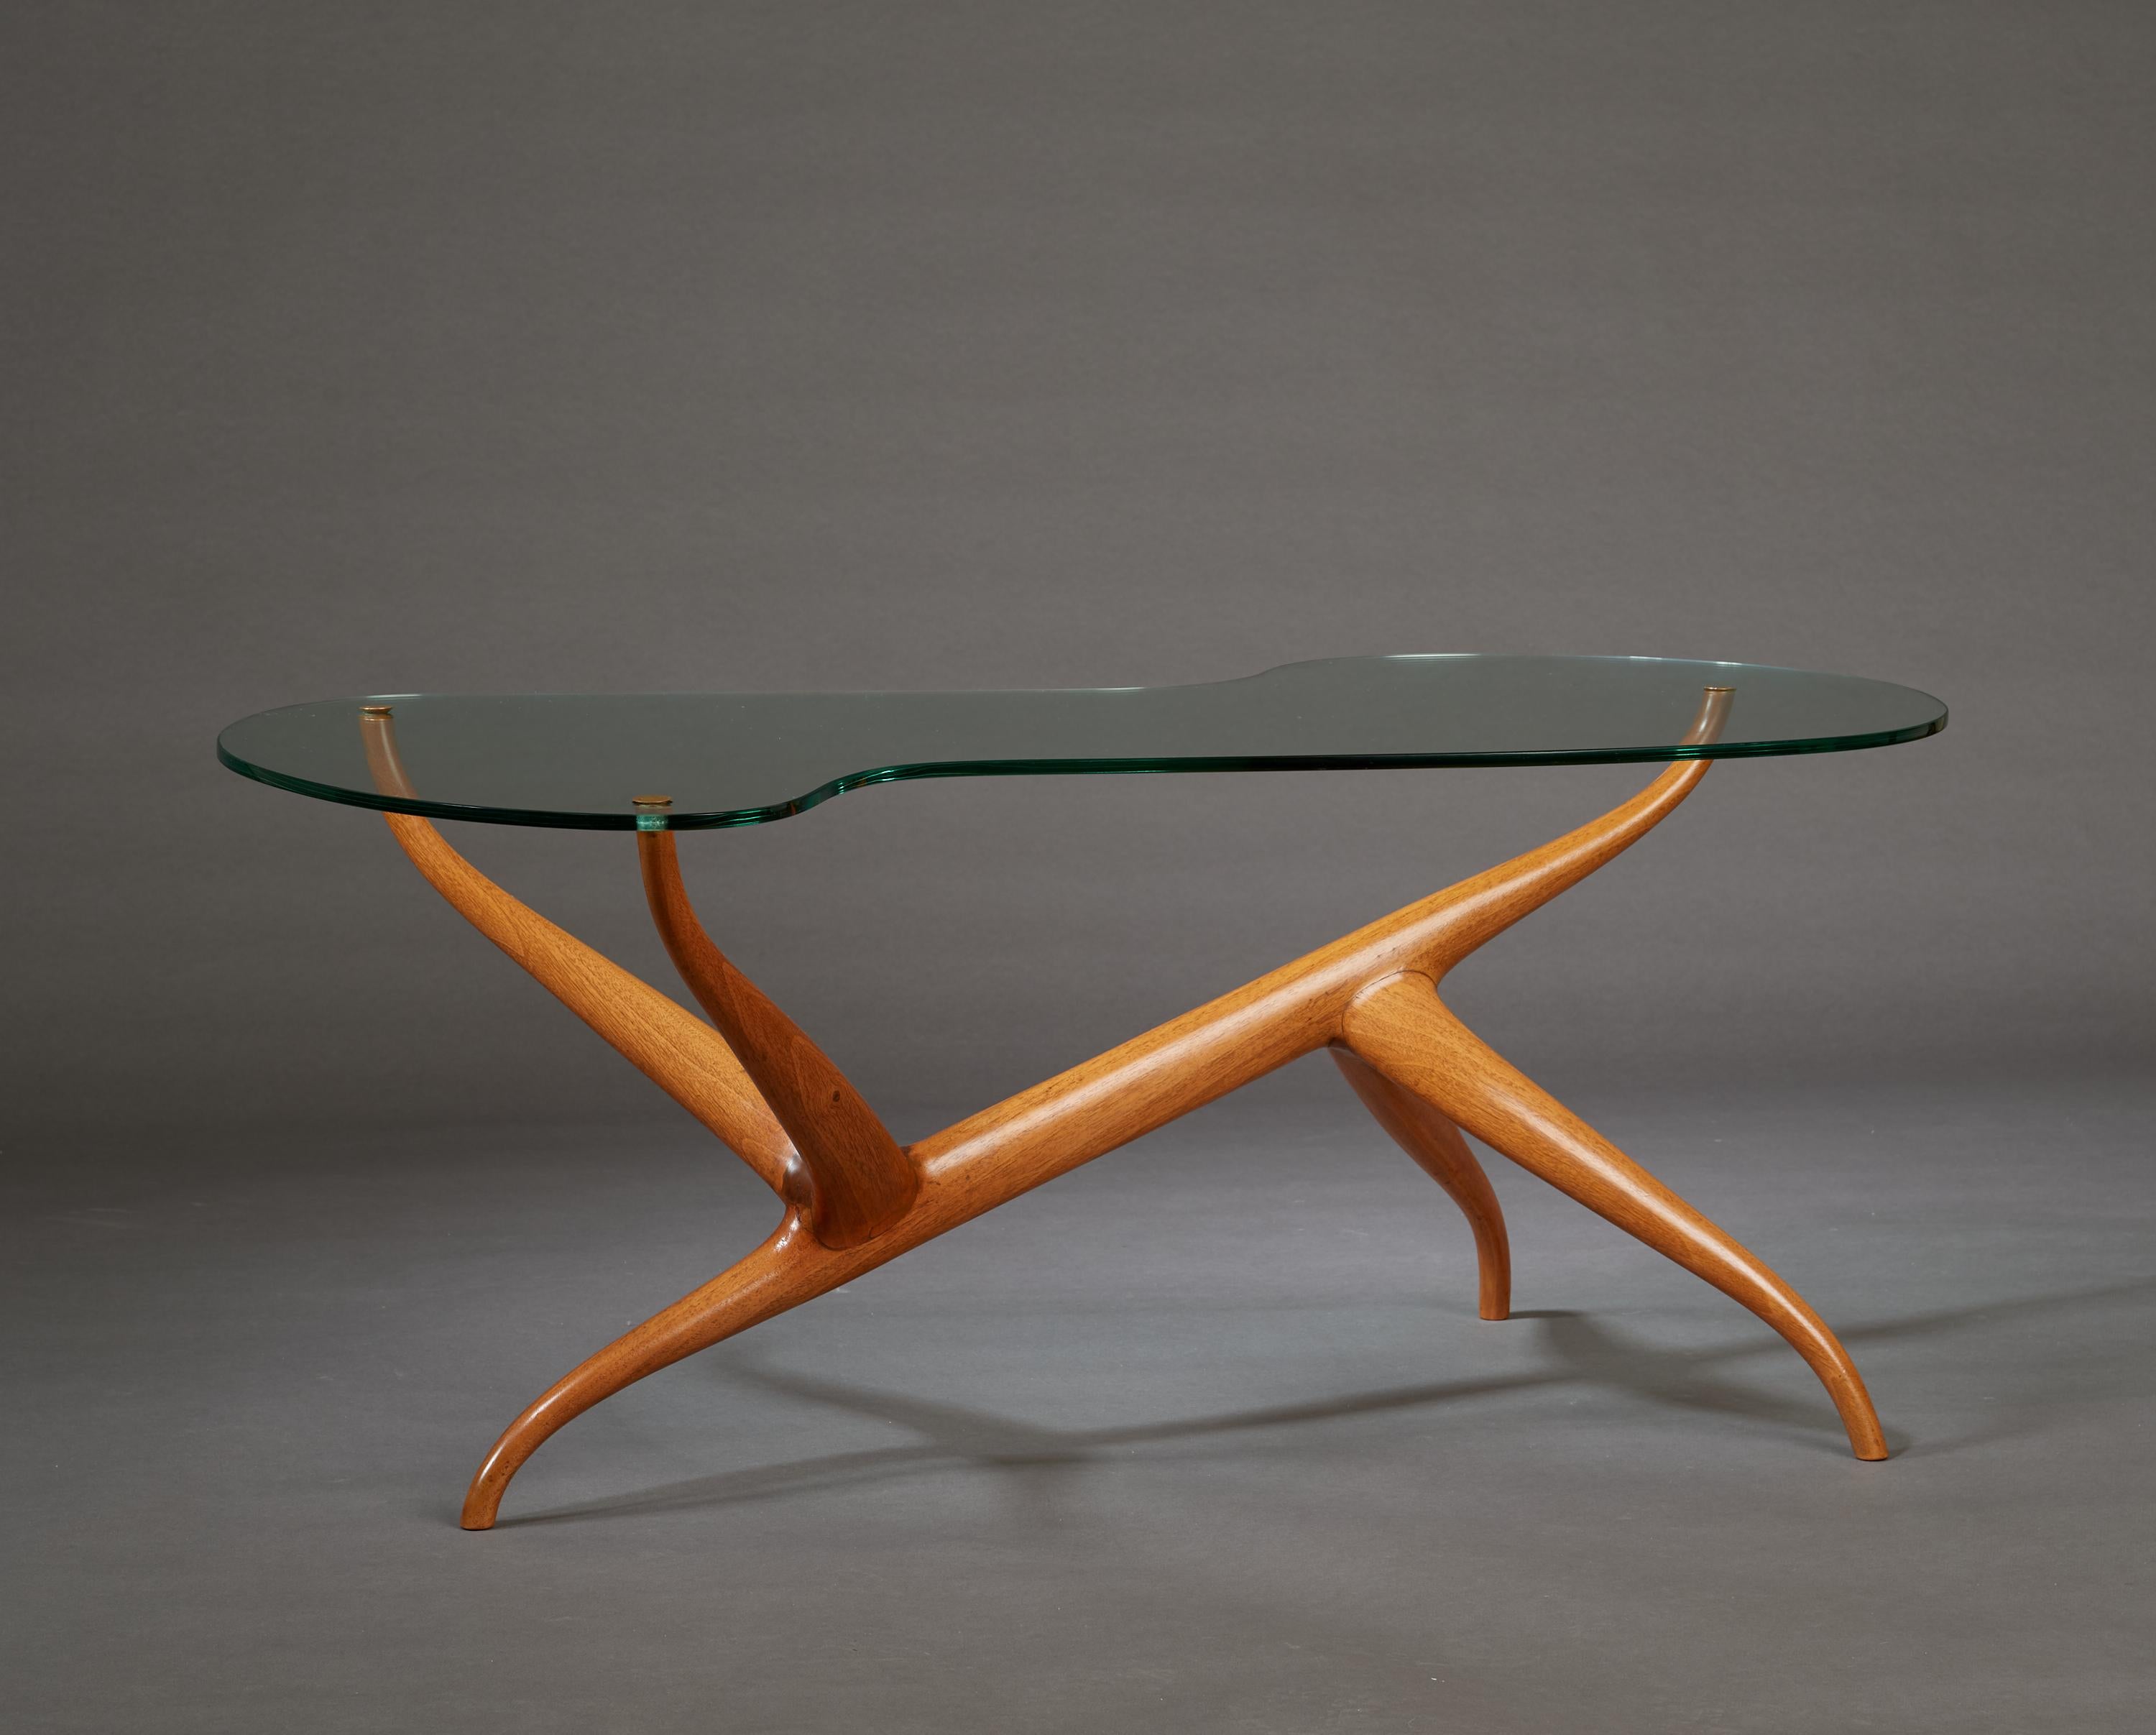 Pierluigi Giordani (1924-2011)

Une table basse sculpturale unique en son genre de Pierluigi Giordani, et un chef-d'œuvre d'abstraction organique. Un plateau de verre biomorphique, serti de délicats rivets en laiton, flotte comme un nuage sur un